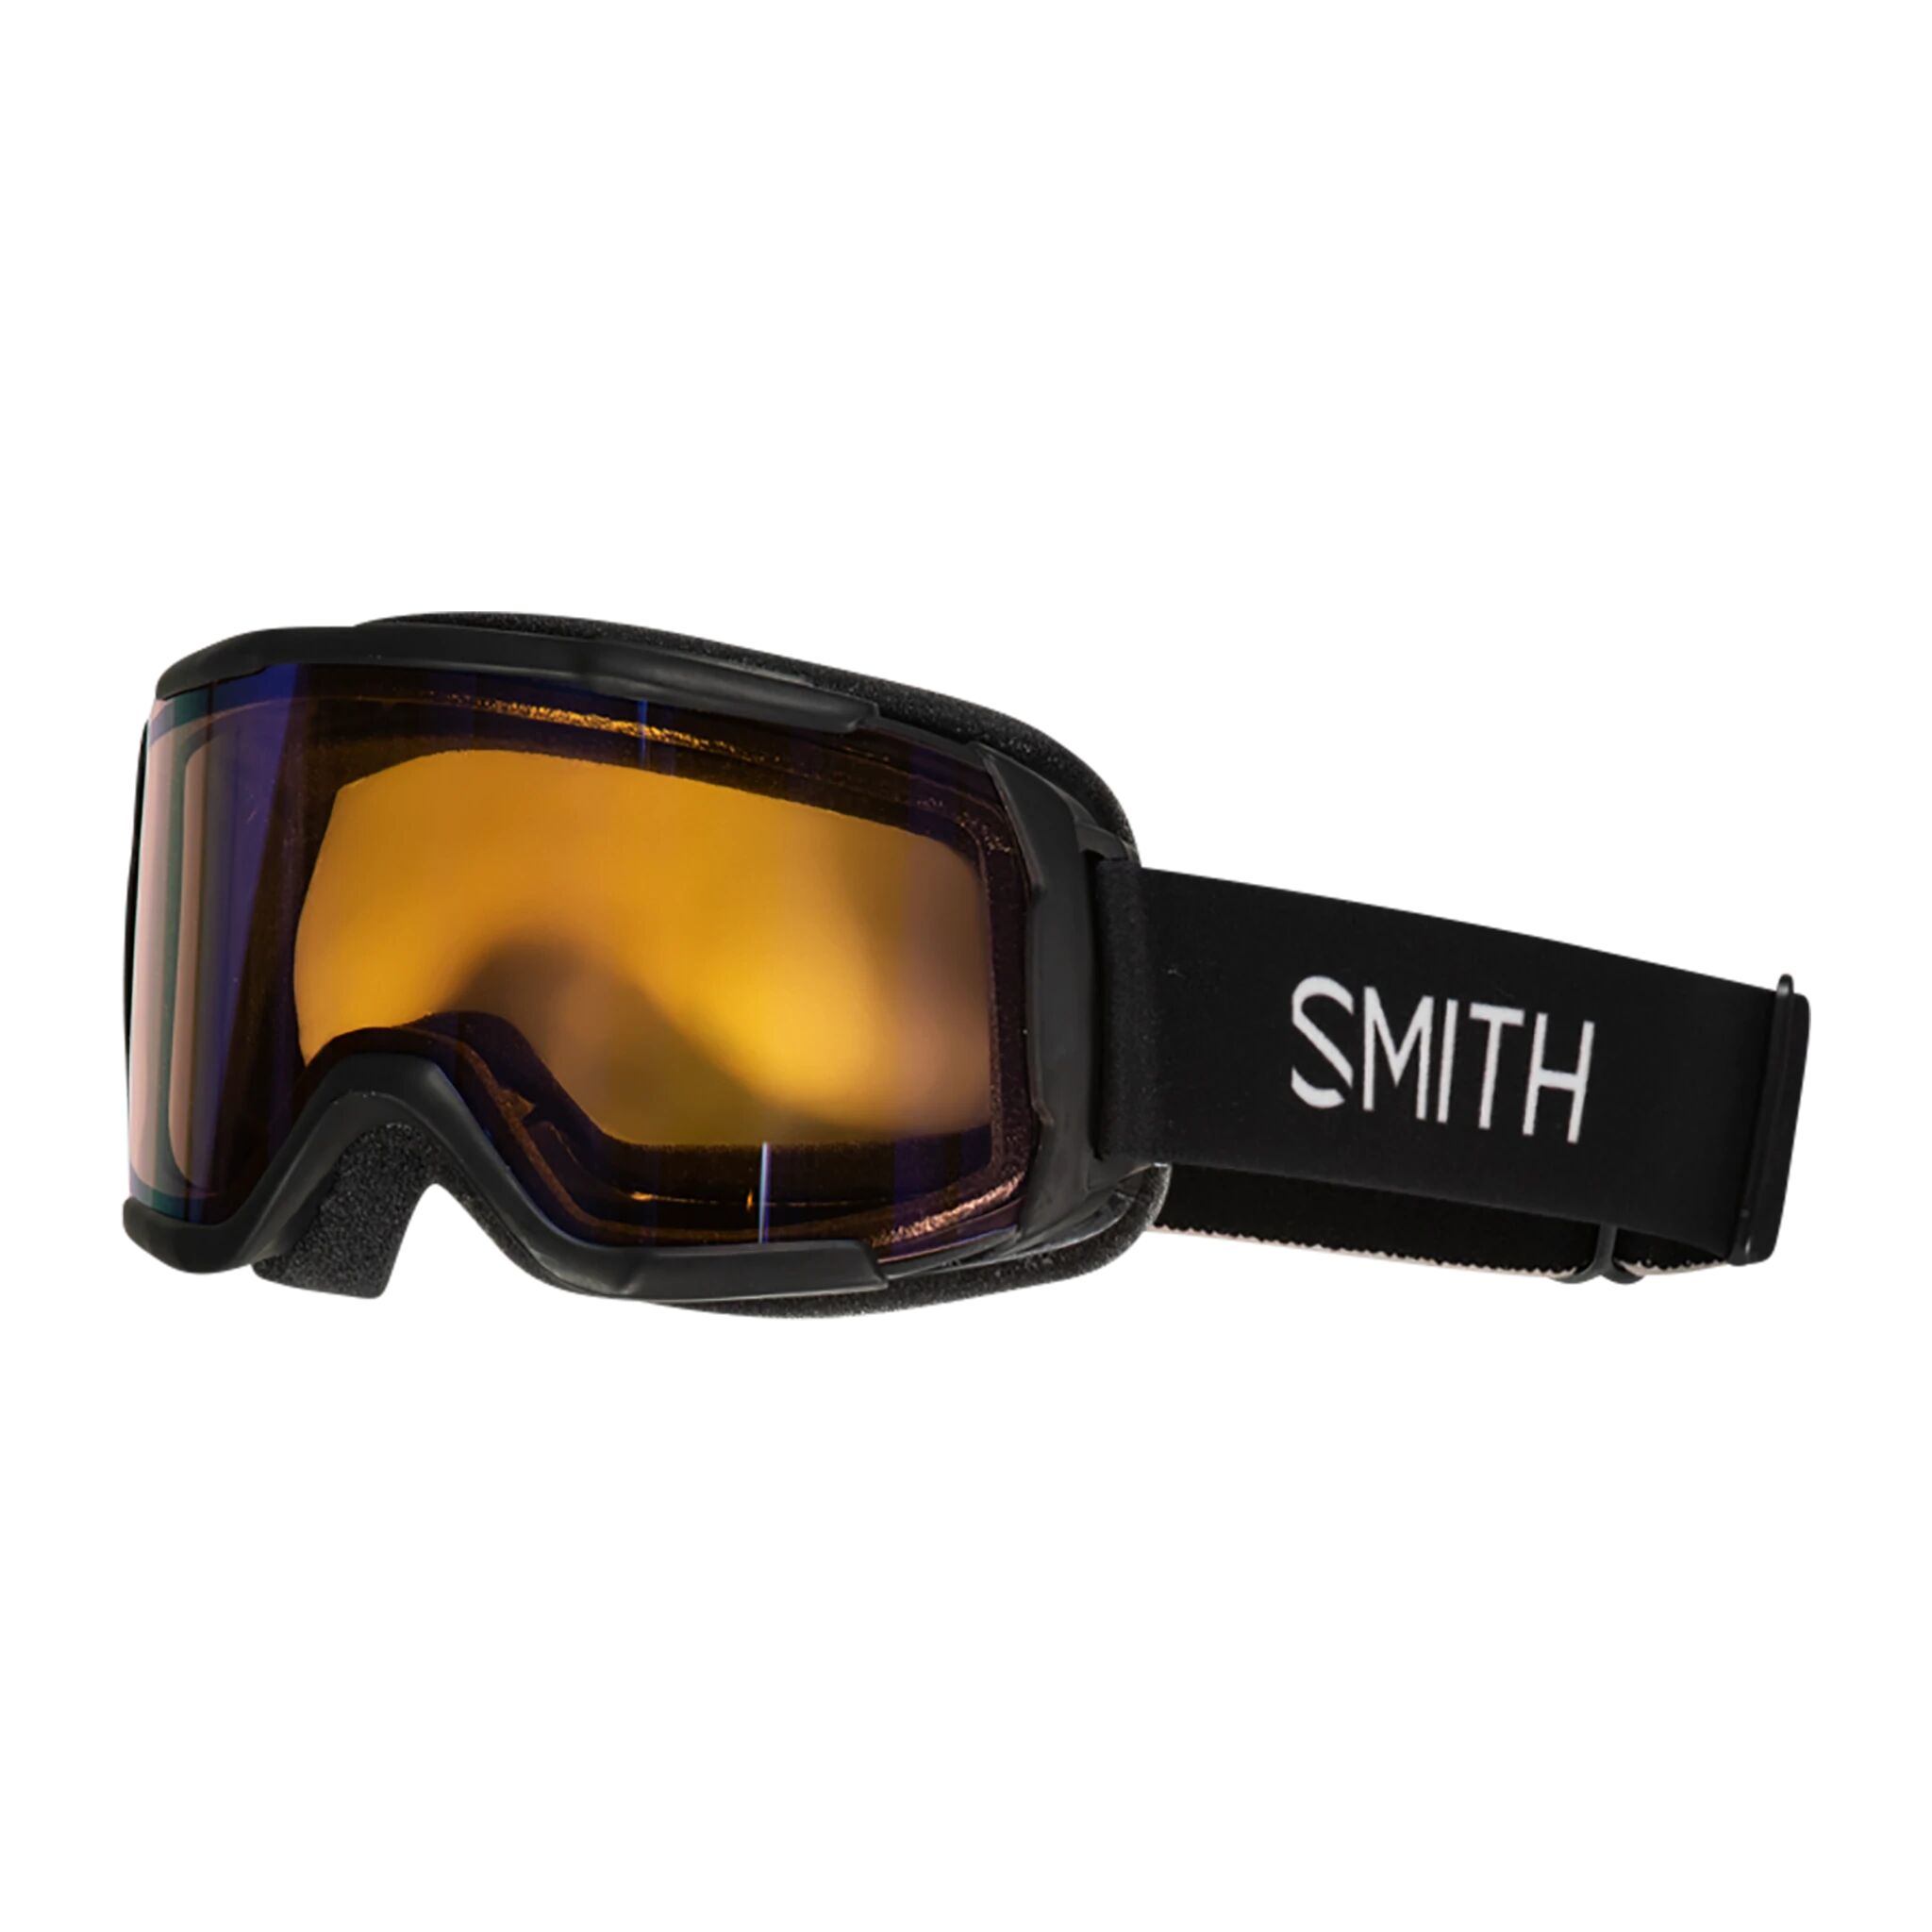 Smith Goggles Daredevil 21/22, alpinbrille junior  One Size Shiny black